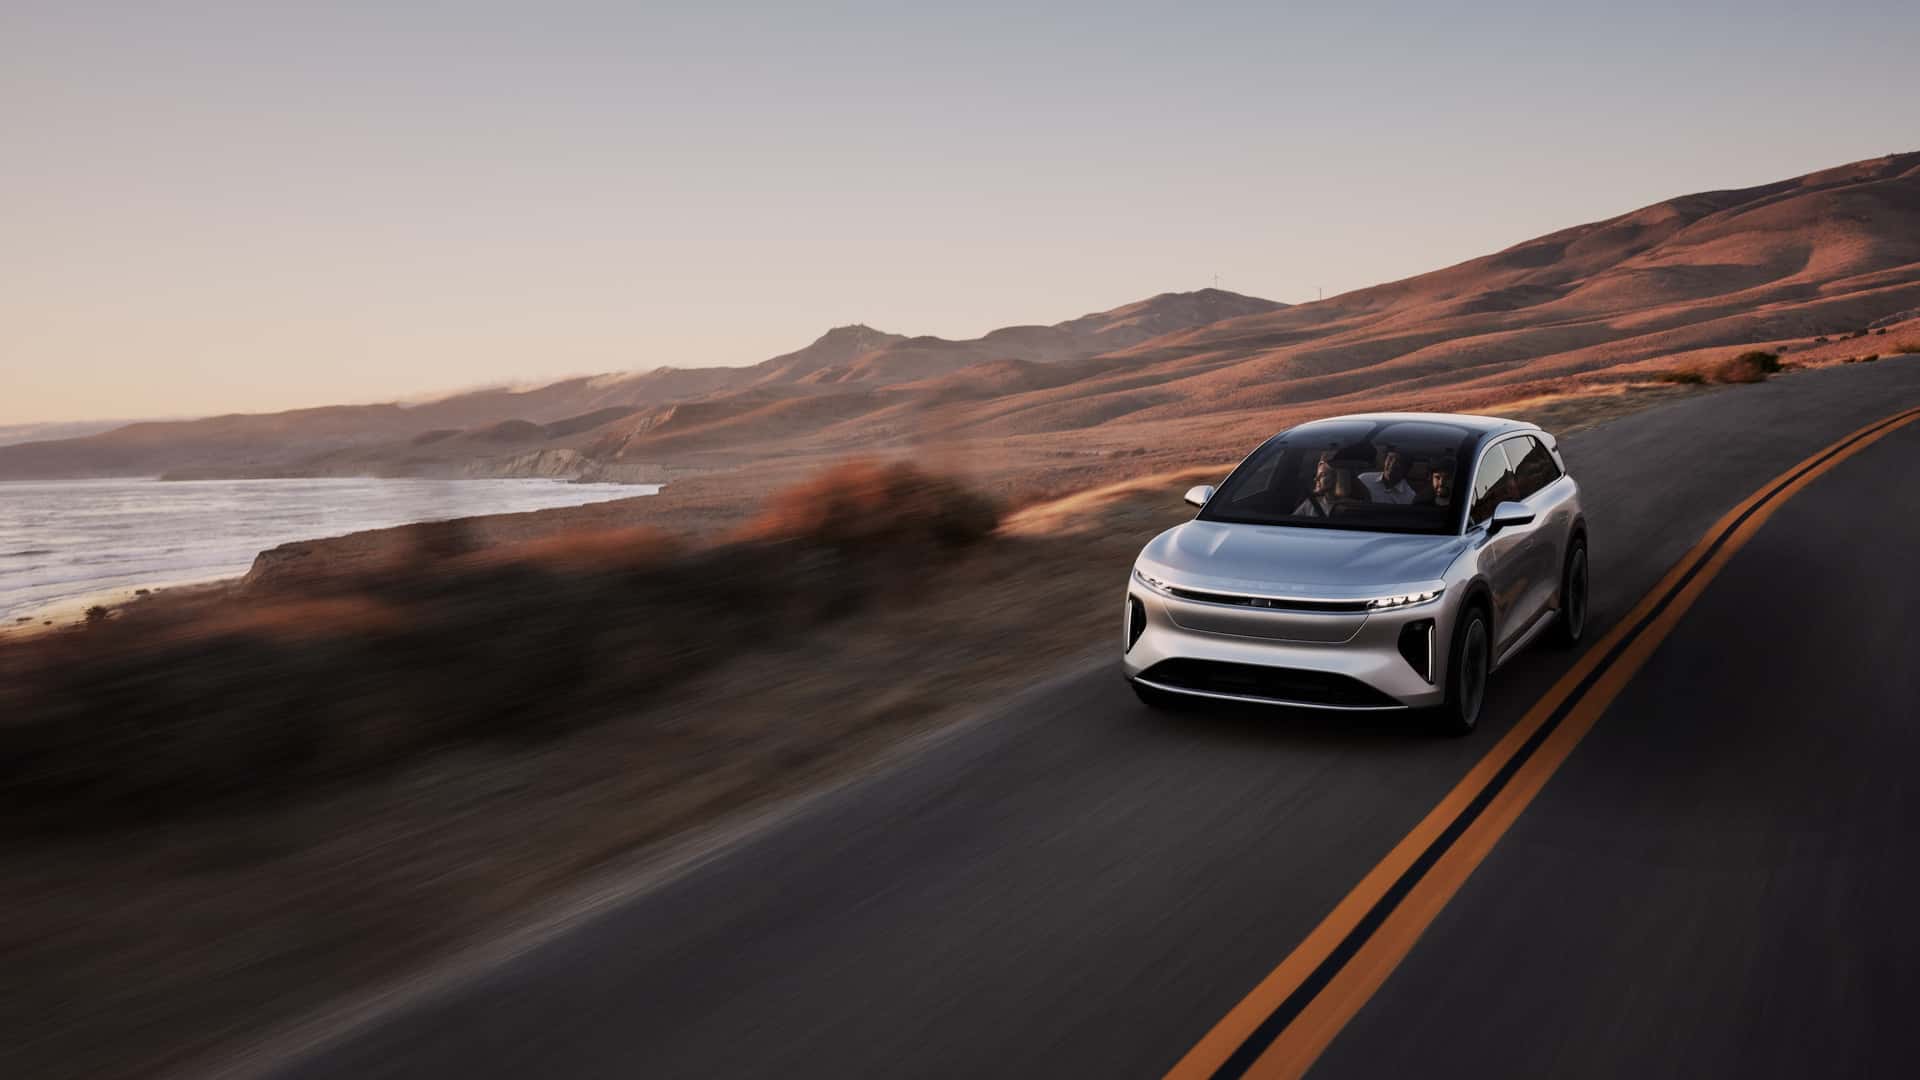 لوسيد جرافيتي SUV الكهربائية الفاخرة تنطلق رسمياً بمدى يتجاوز 700 كيلومتر وتسارع منافس للسيارات الخارقة 22